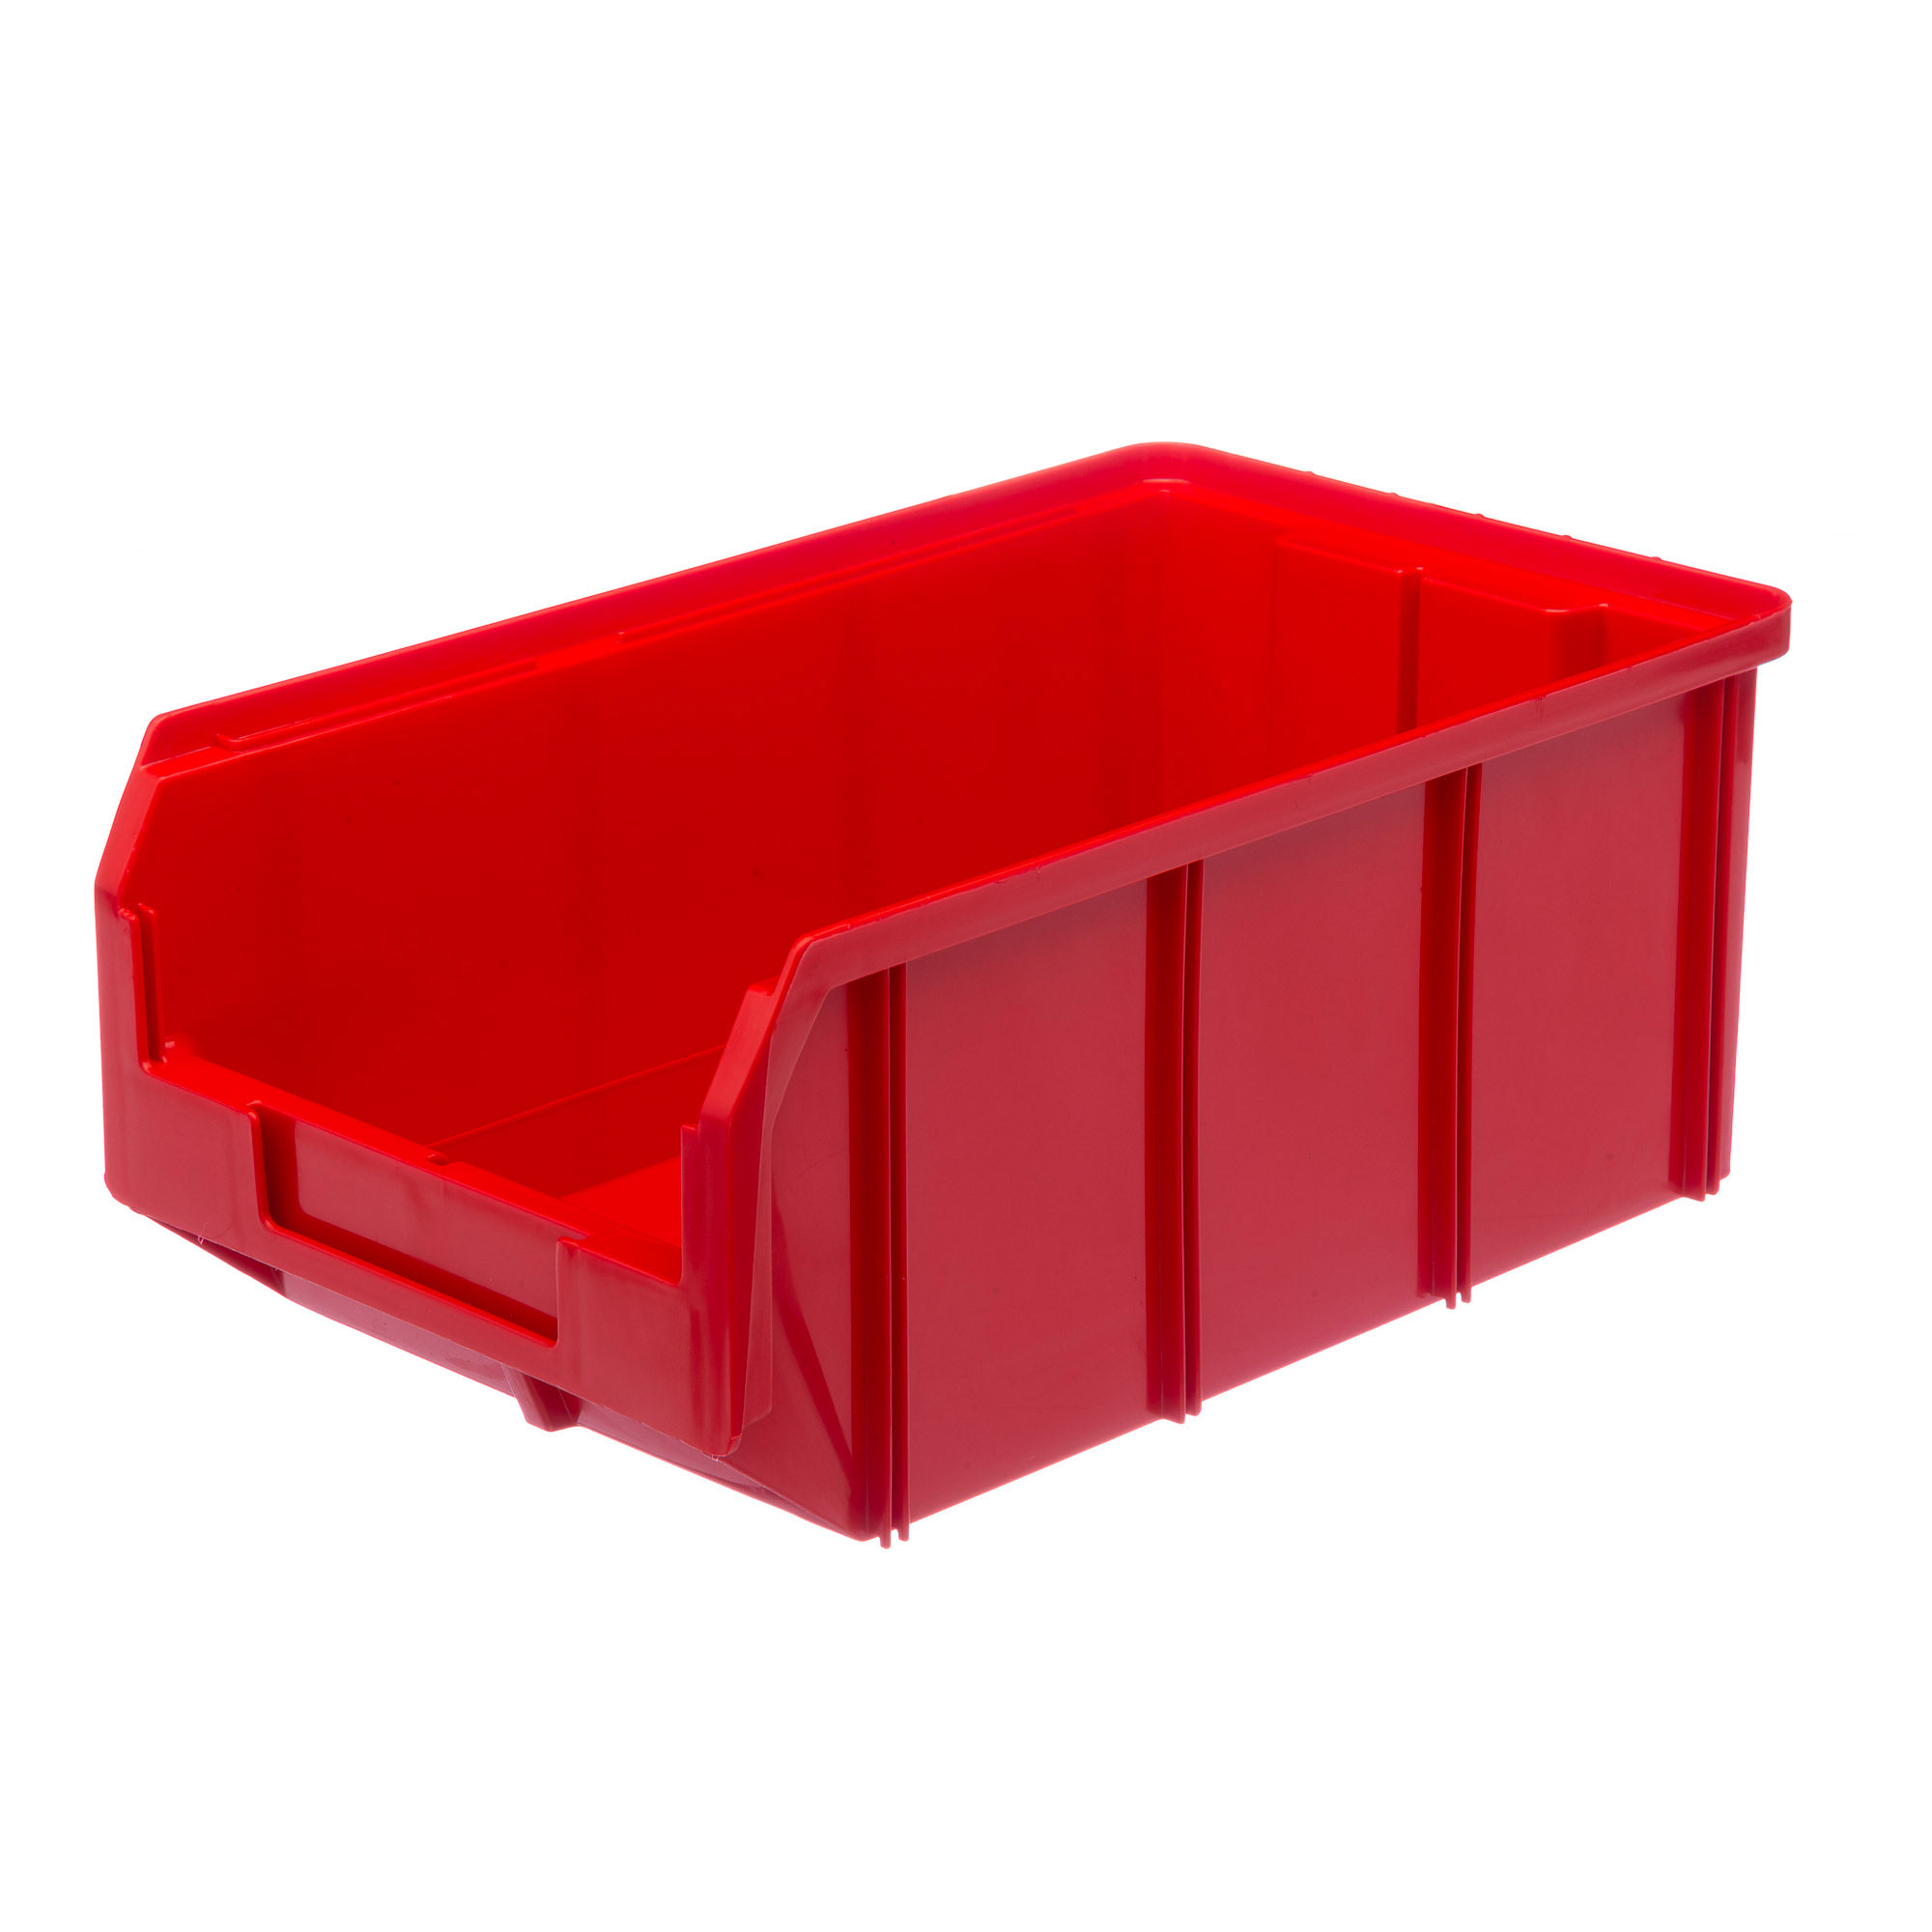 Пластиковый ящик Стелла-техник V-3-красный 342х207x143мм, 9,4 литра мельница пластиковый механизм 115 мл 45 80 гр красный